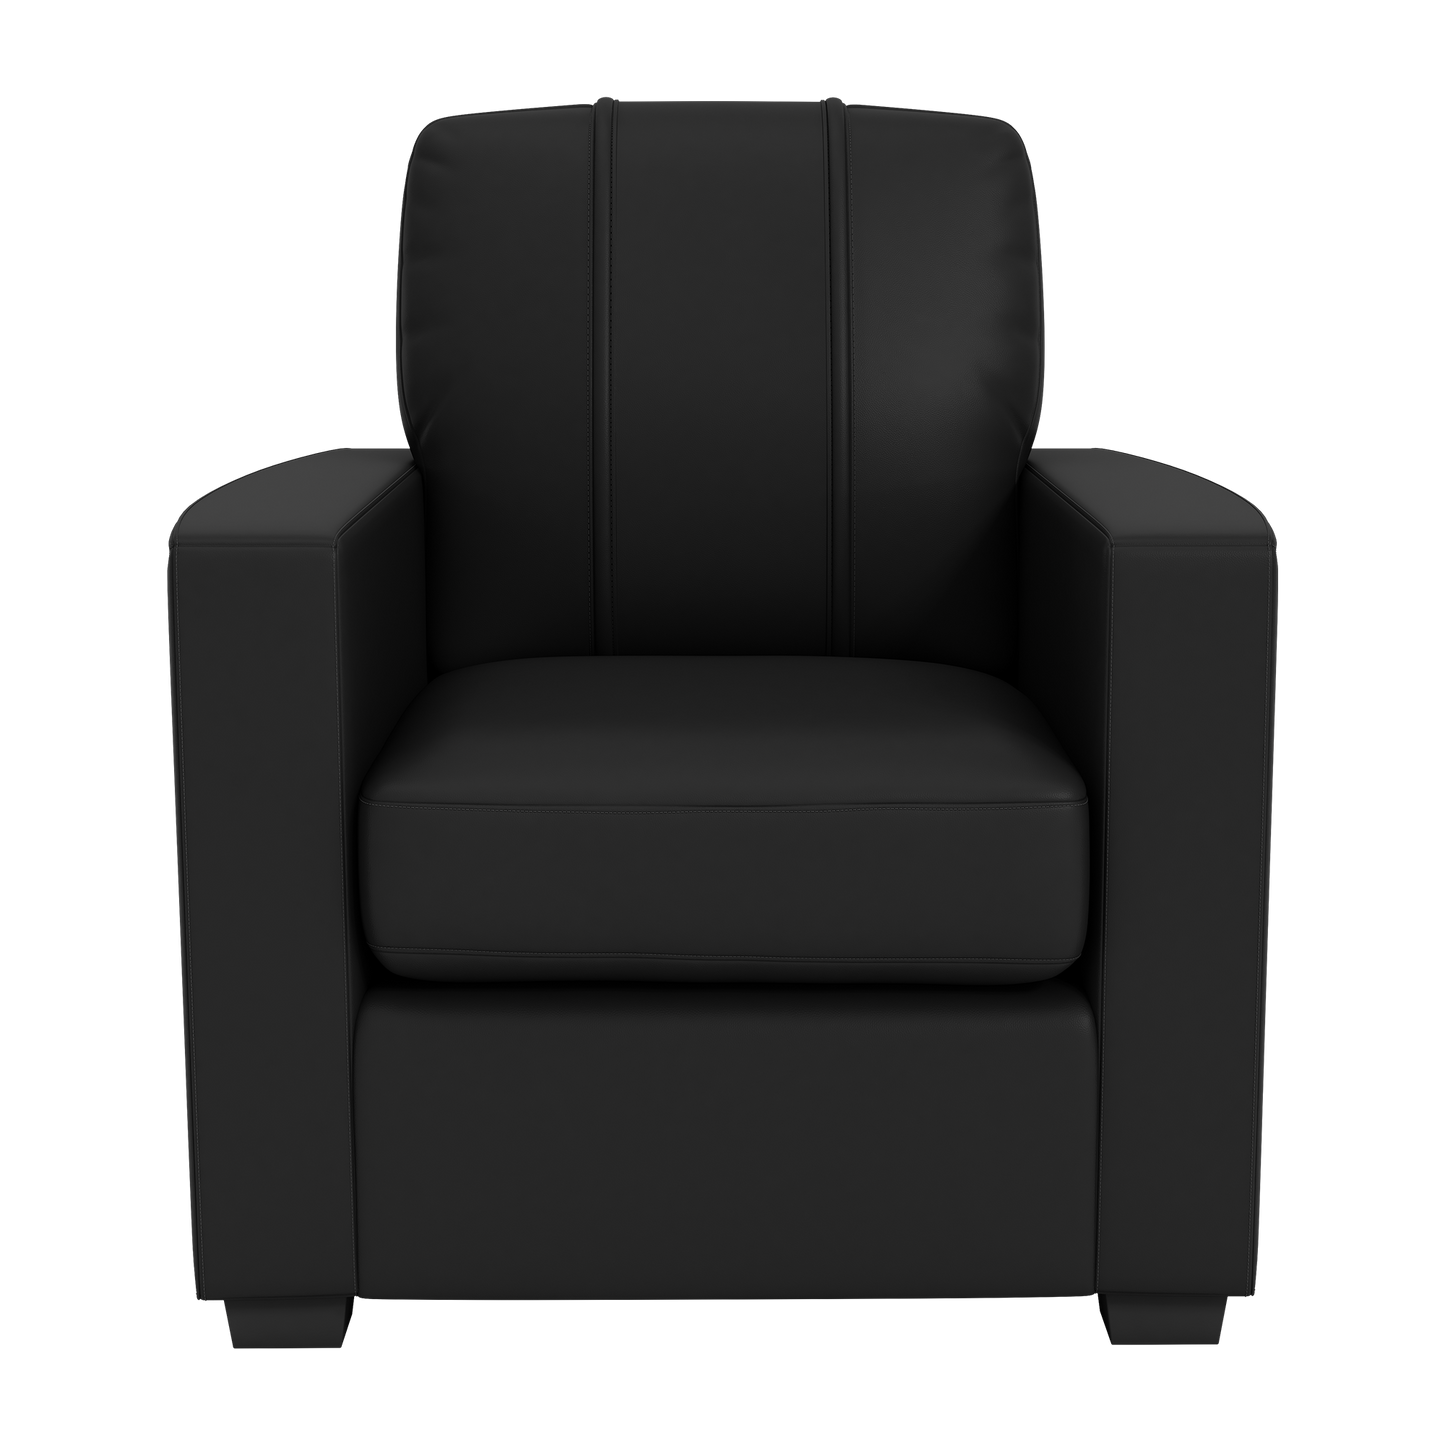 Silver Club Chair with FC Dallas Alternate Logo